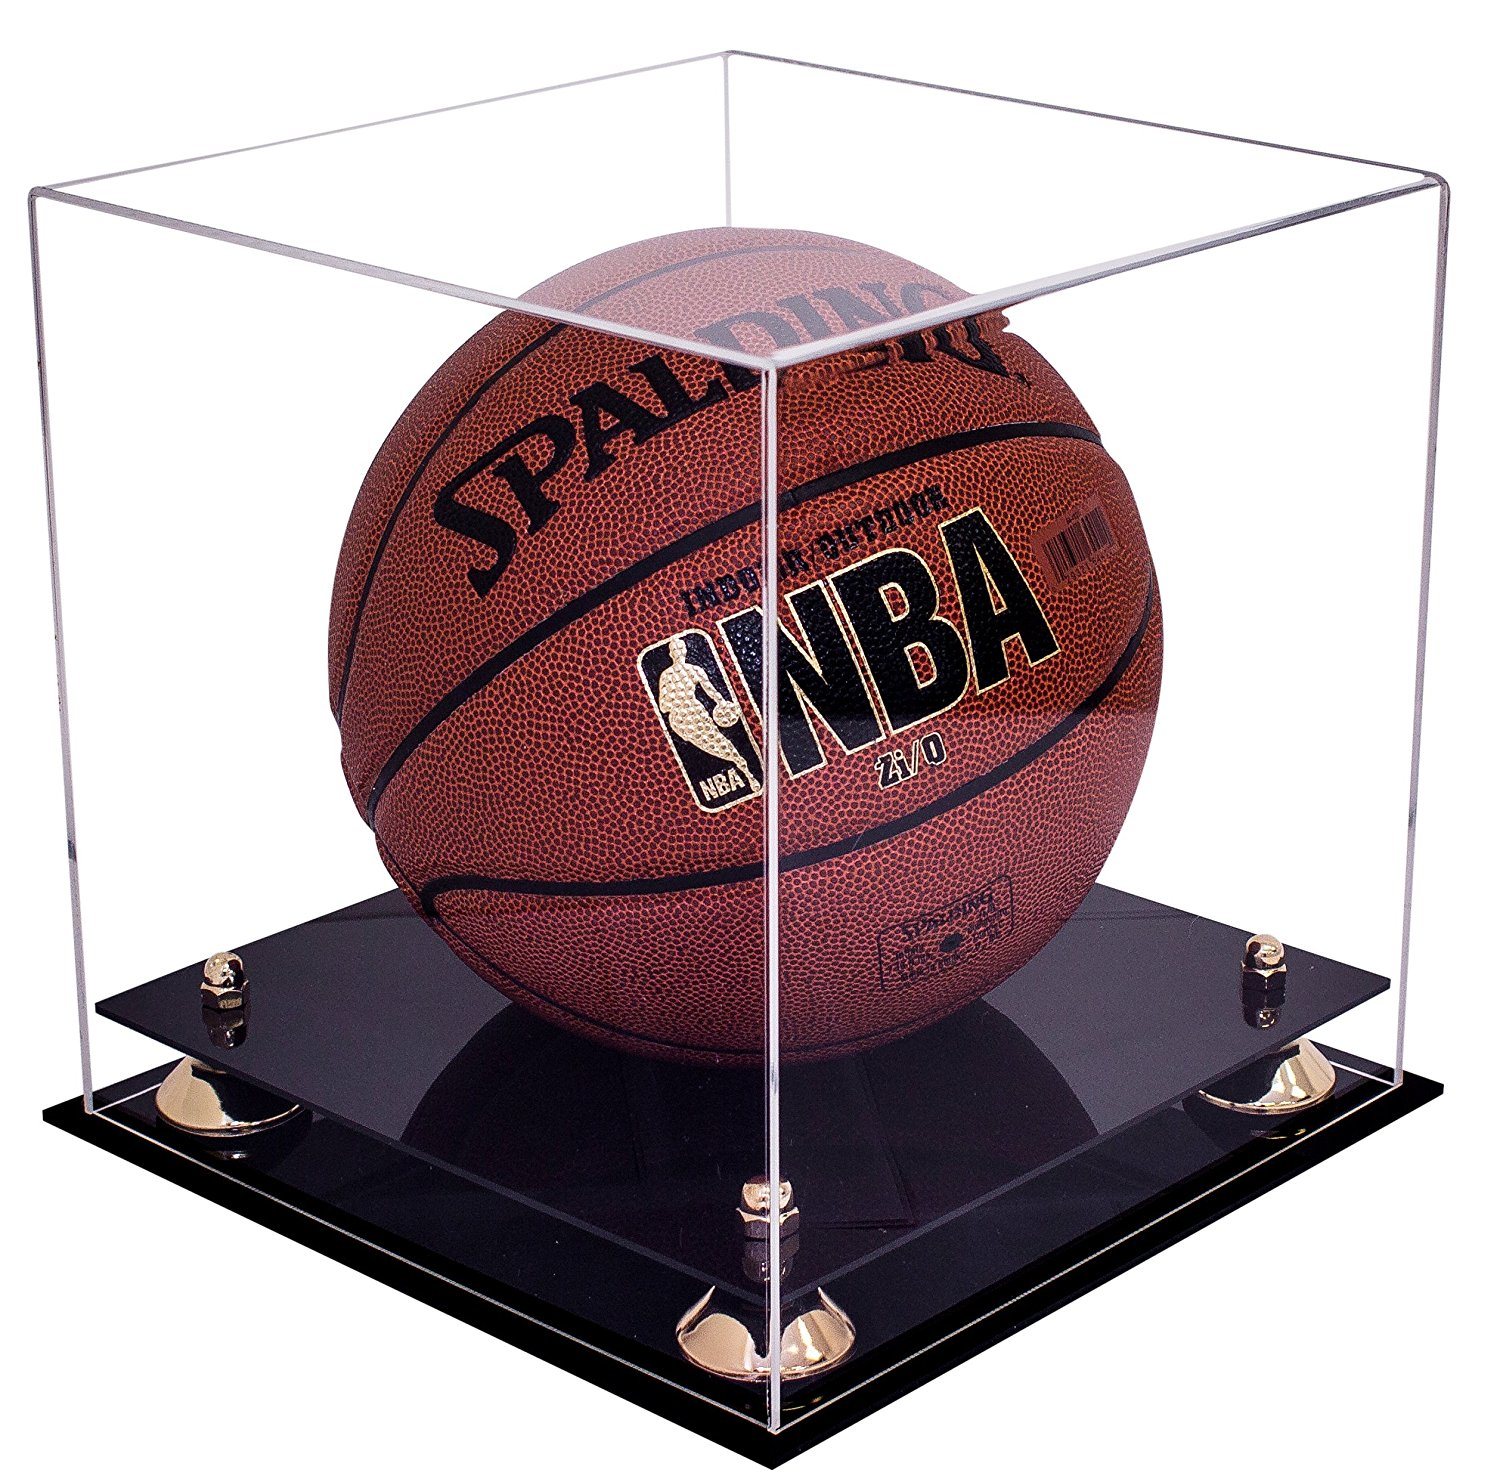 Deluxe Acrylic Basketball Display Case